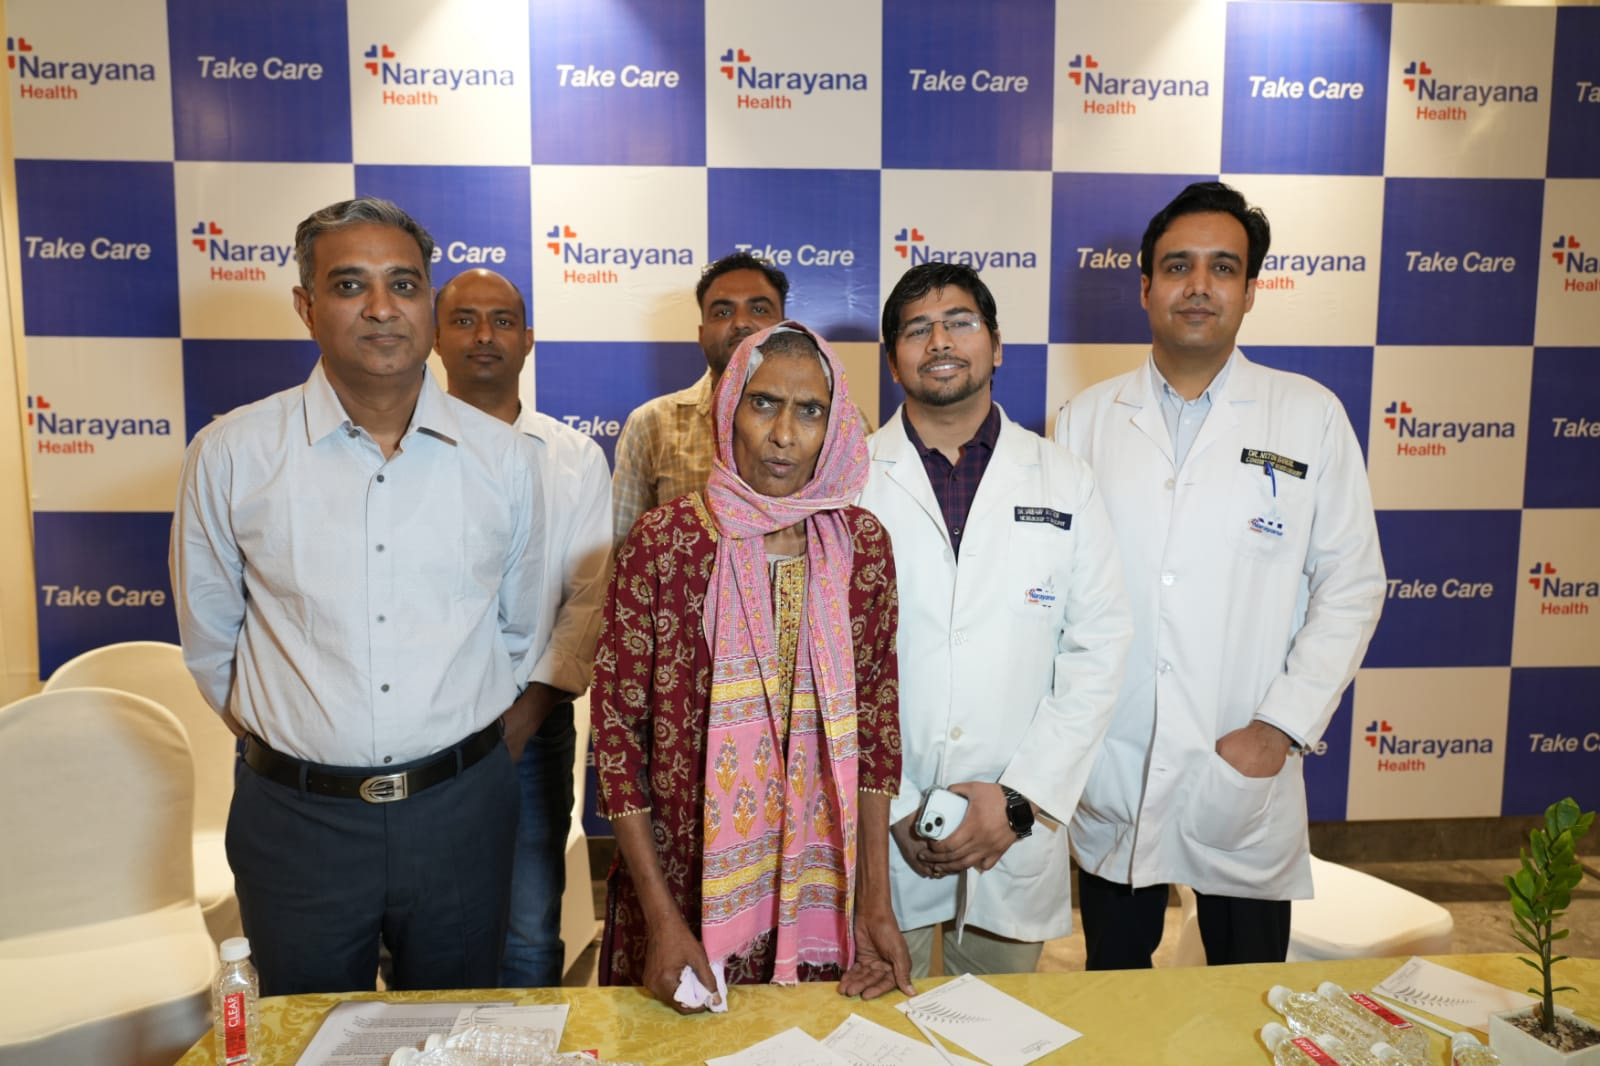 नारायणा हॉस्पिटल जयपुर में हुई राजस्थान की पहली डीप ब्रेन स्टिमुलेशन सर्जरी, पार्किंसंस रोगियों के लिए आशा की एक नई किरण